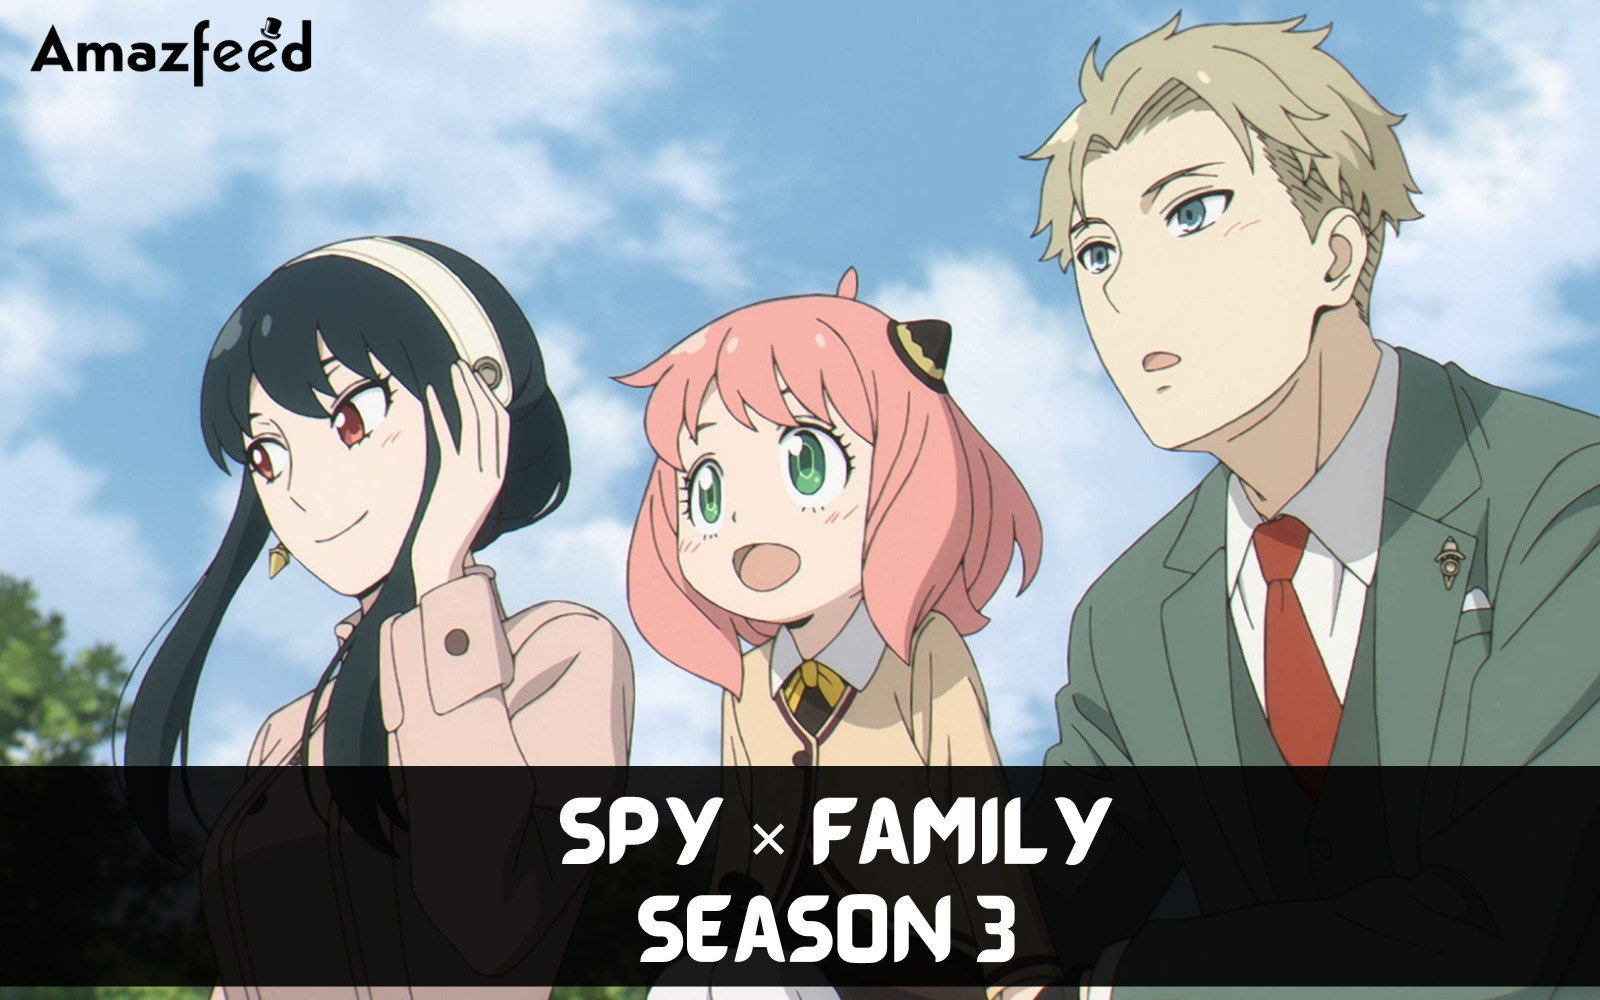 Spy x Family Season 2 - Episode 3 Part 3 #spyxfamily #episode3 #season